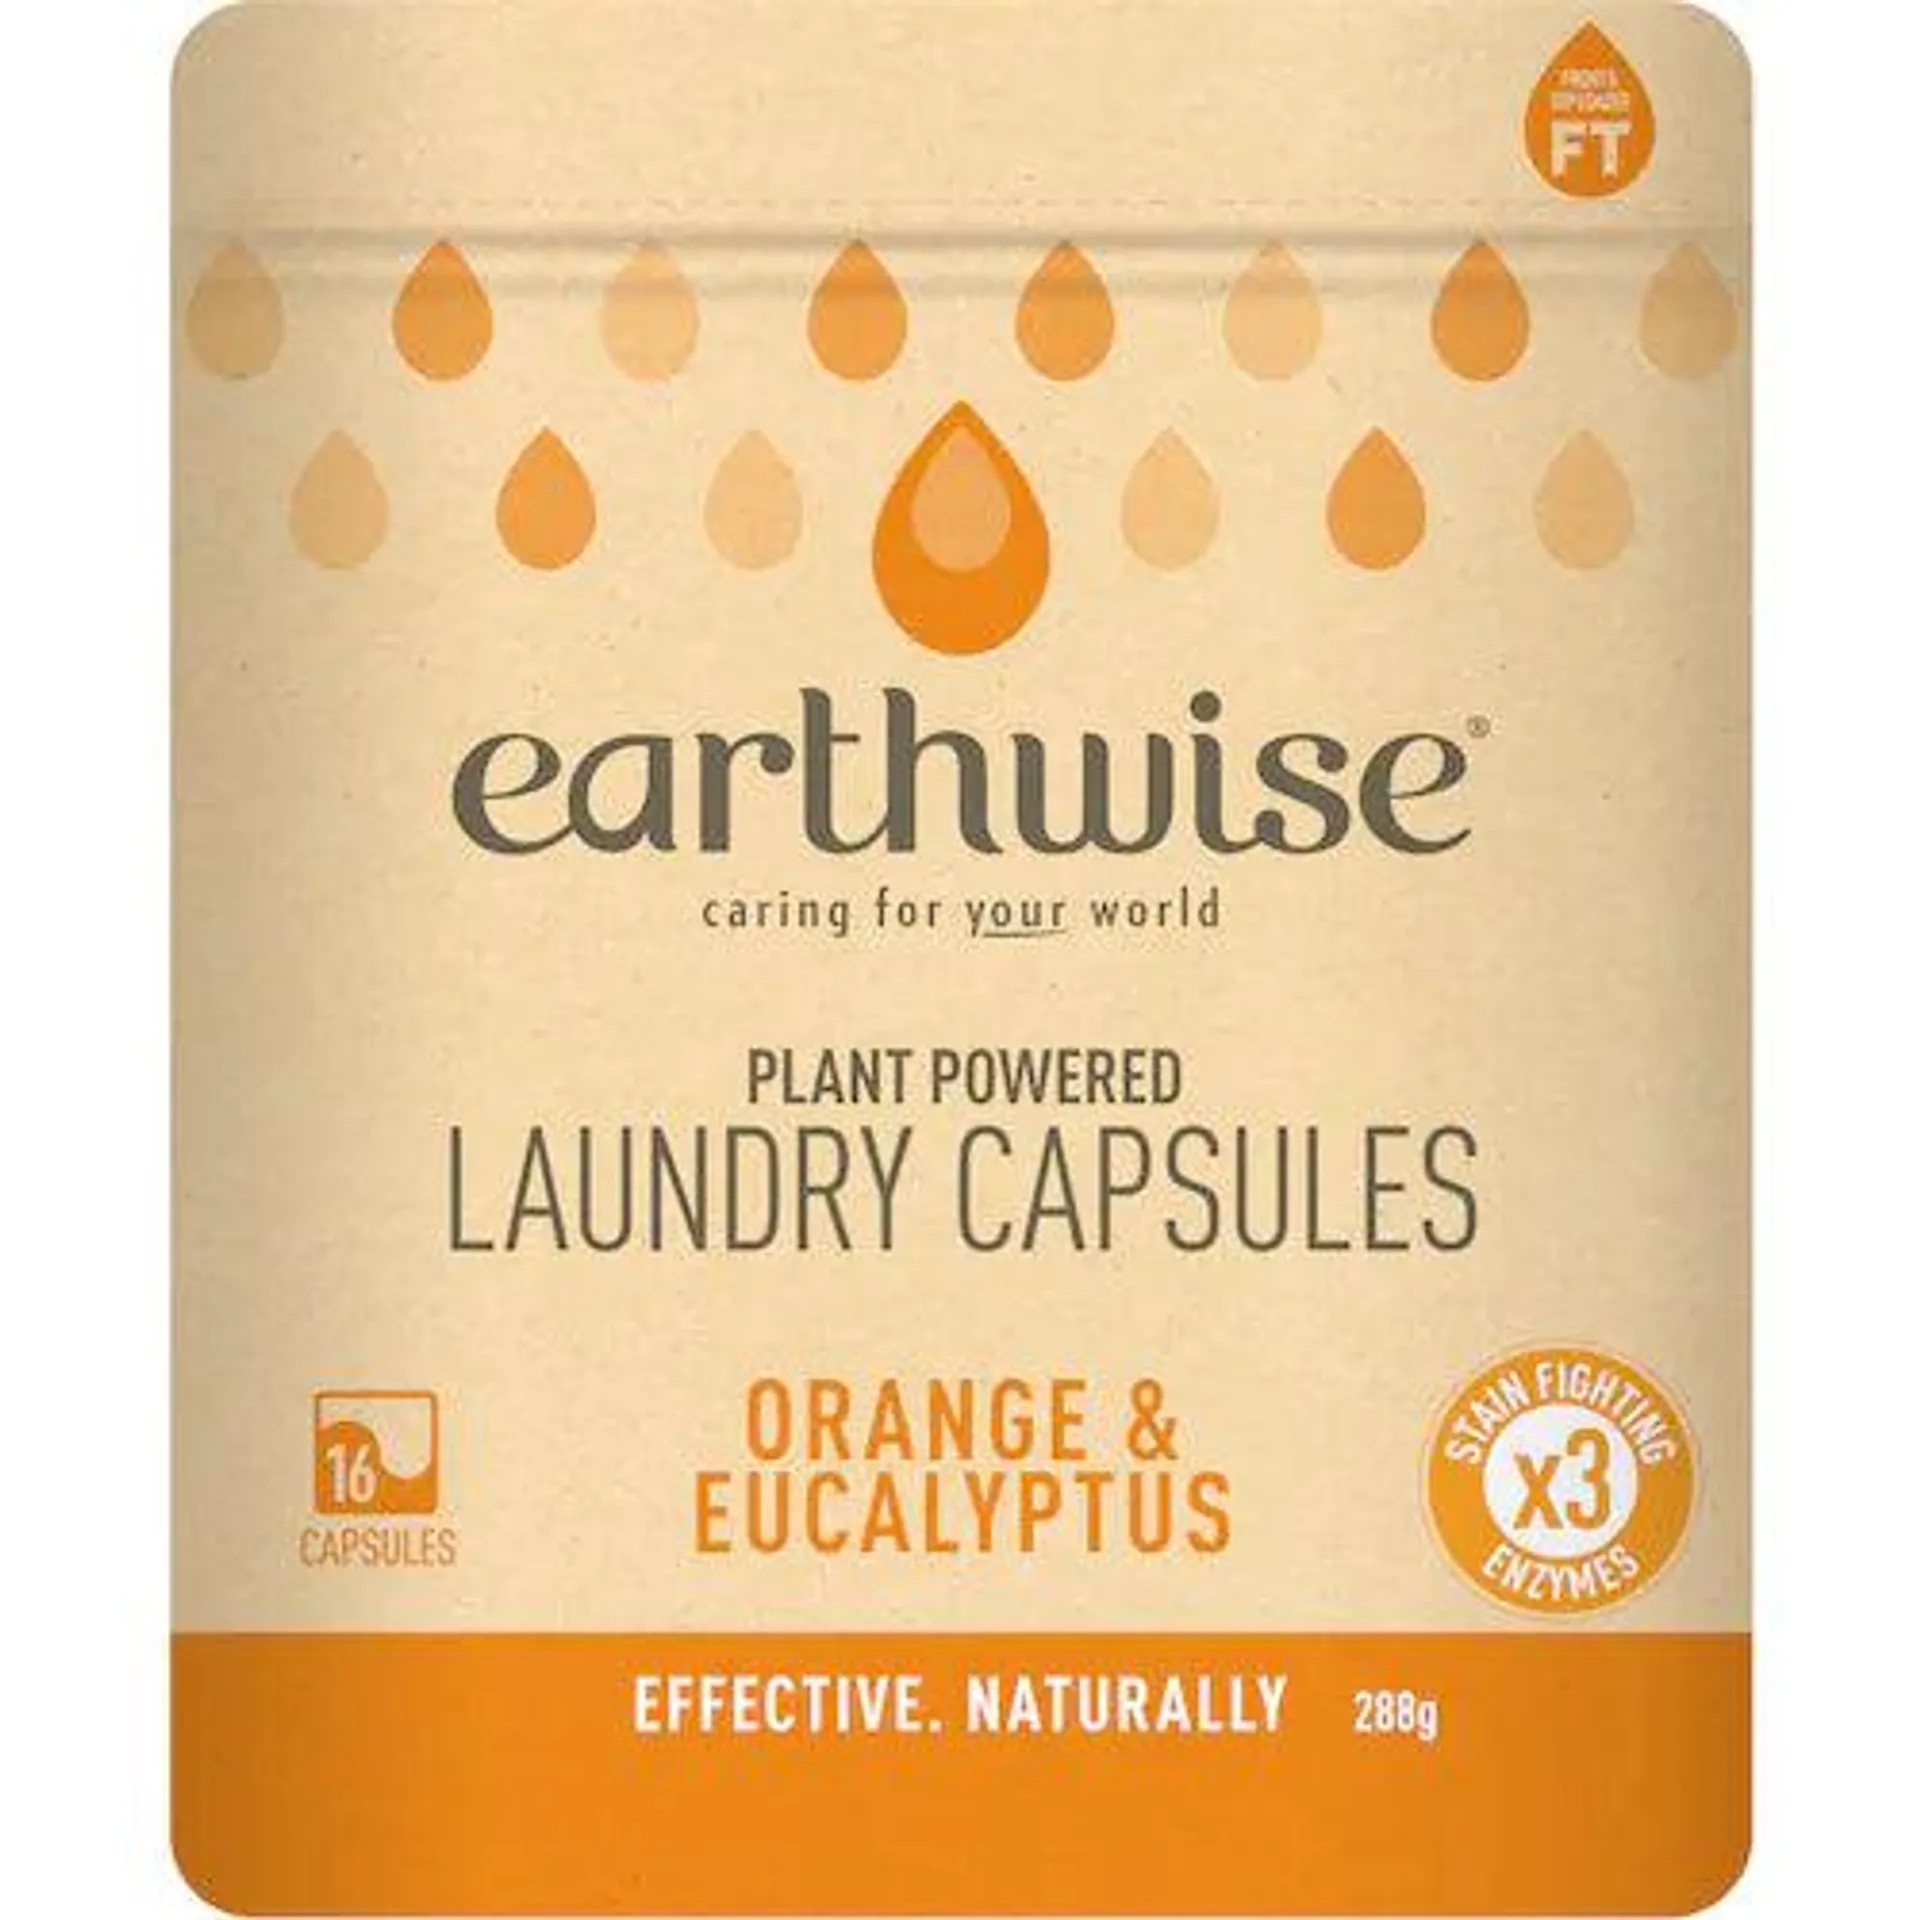 EW Laundry Capsules Orange&Eucalypt 16s